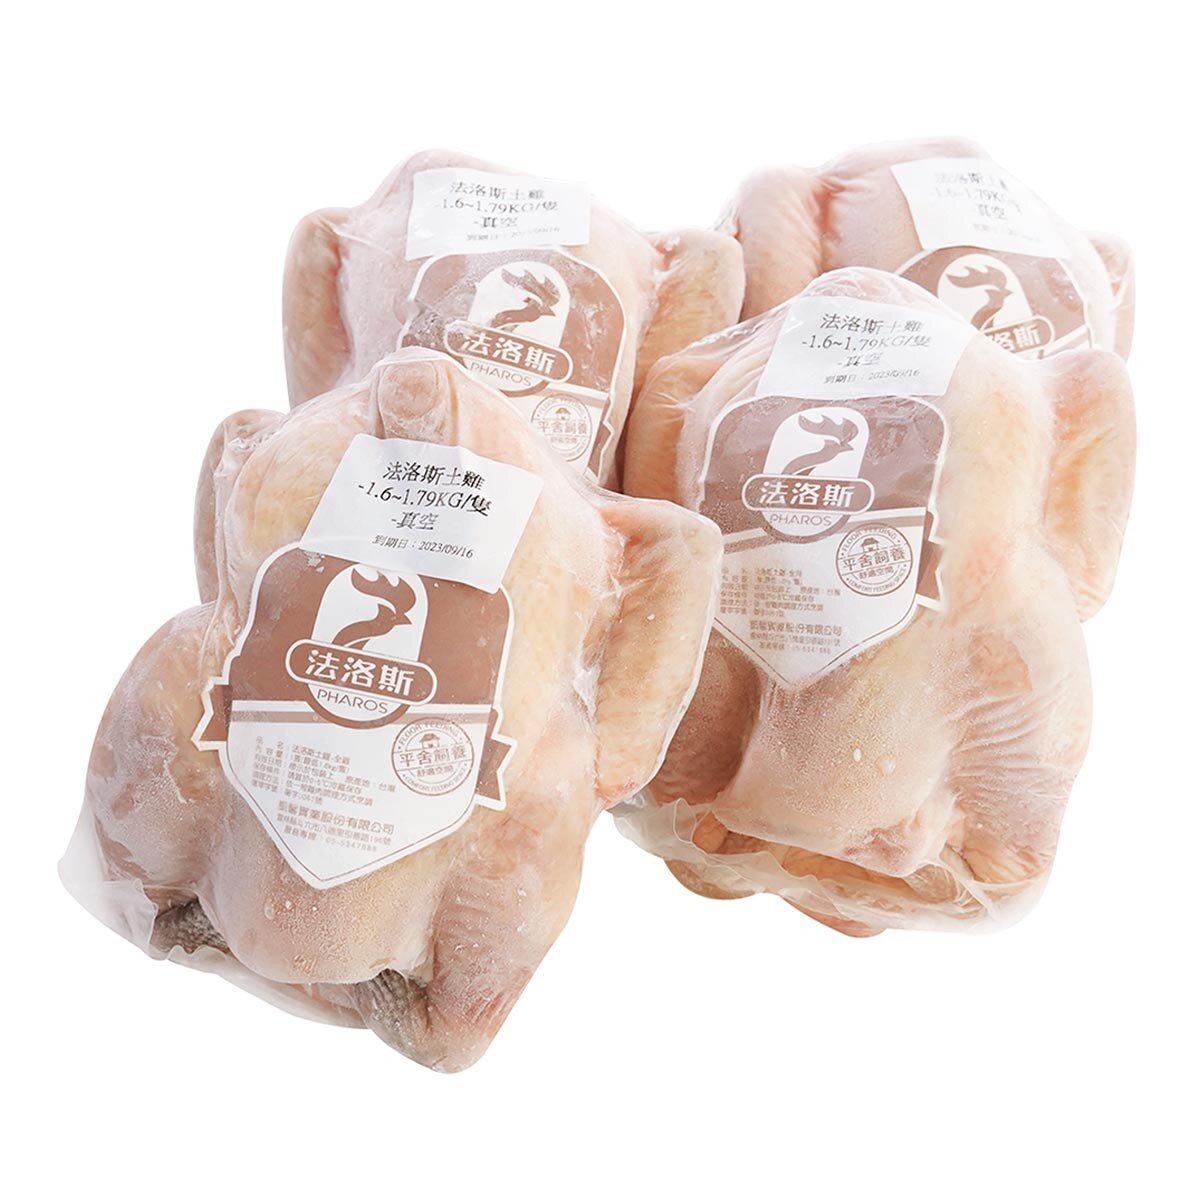 凱馨 台灣冷凍法洛斯土雞全雞 1.6公斤 X 4入